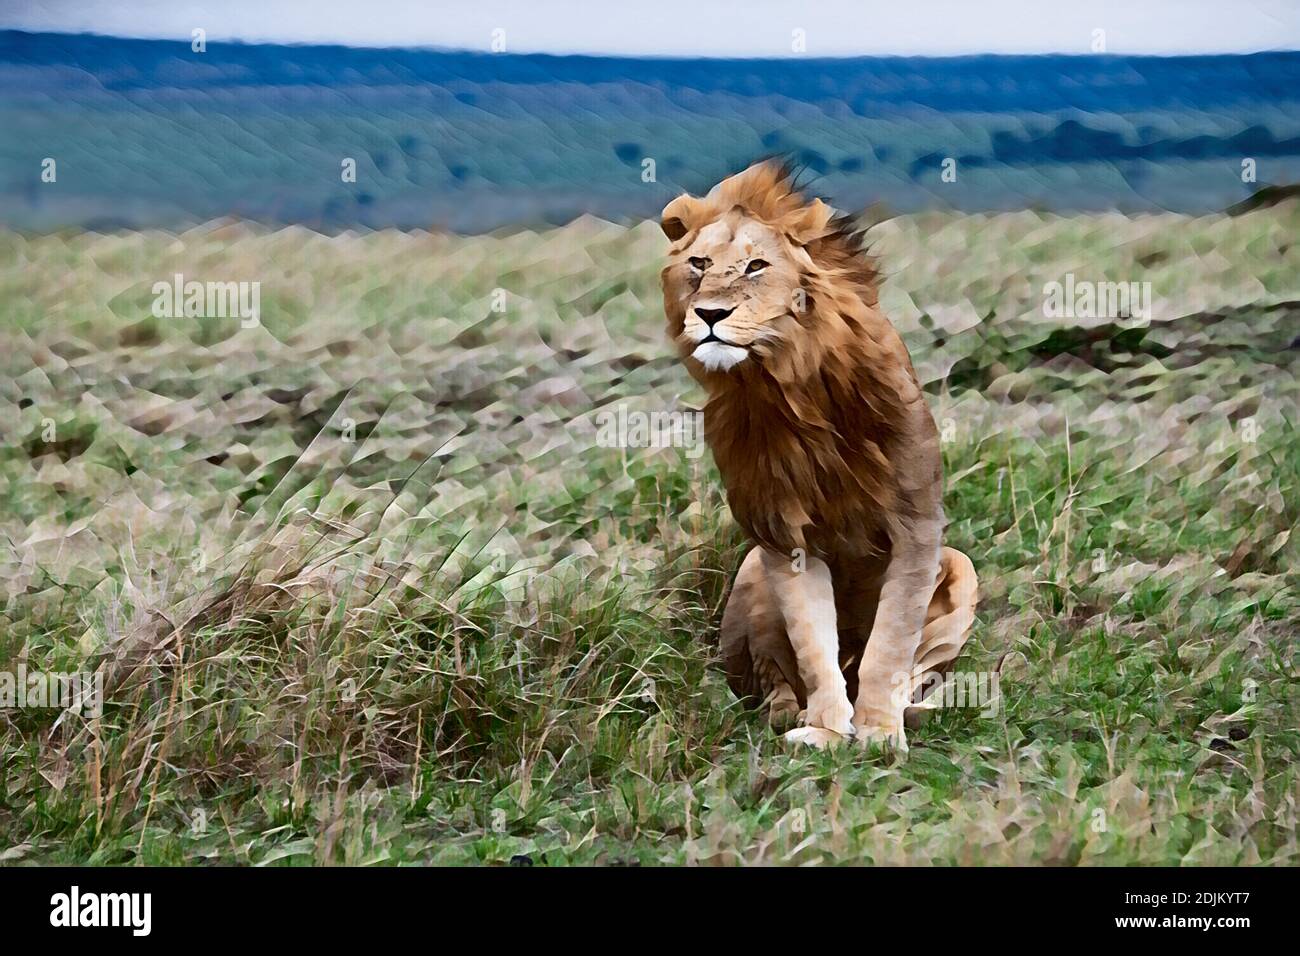 Afrique, Kenya, plaines du Serengeti du Nord, Maasai Mara. Lion mâle (SAUVAGE: Panthera leo) avec des mouches sur le visage dans l'habitat des prairies. Ordinateur amélioré. Banque D'Images